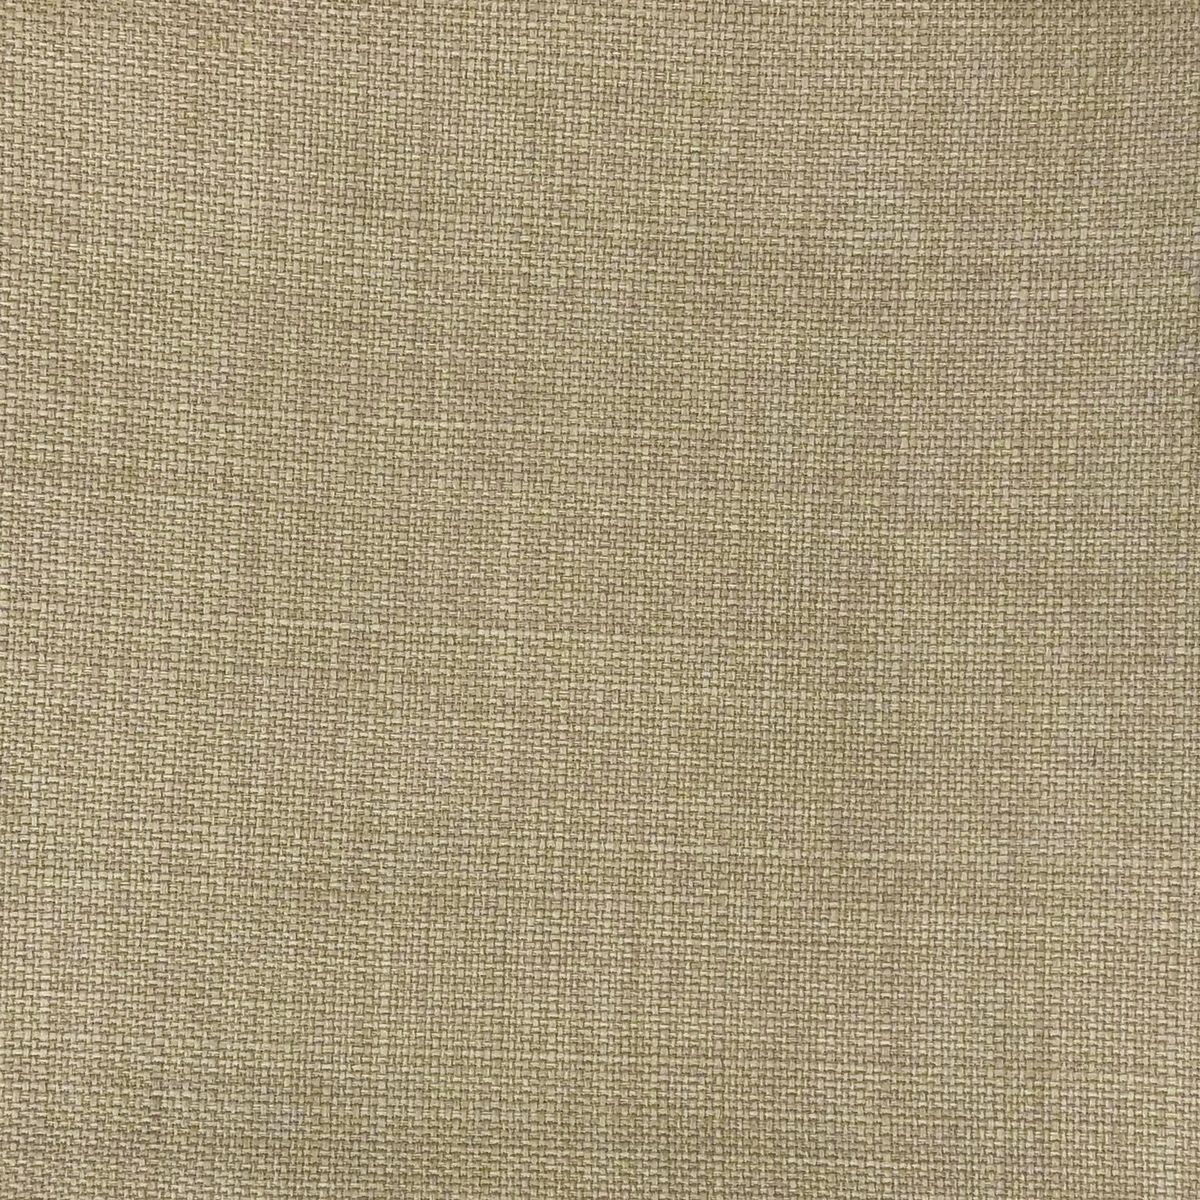 Linoso Buff Fabric by Chatham Glyn